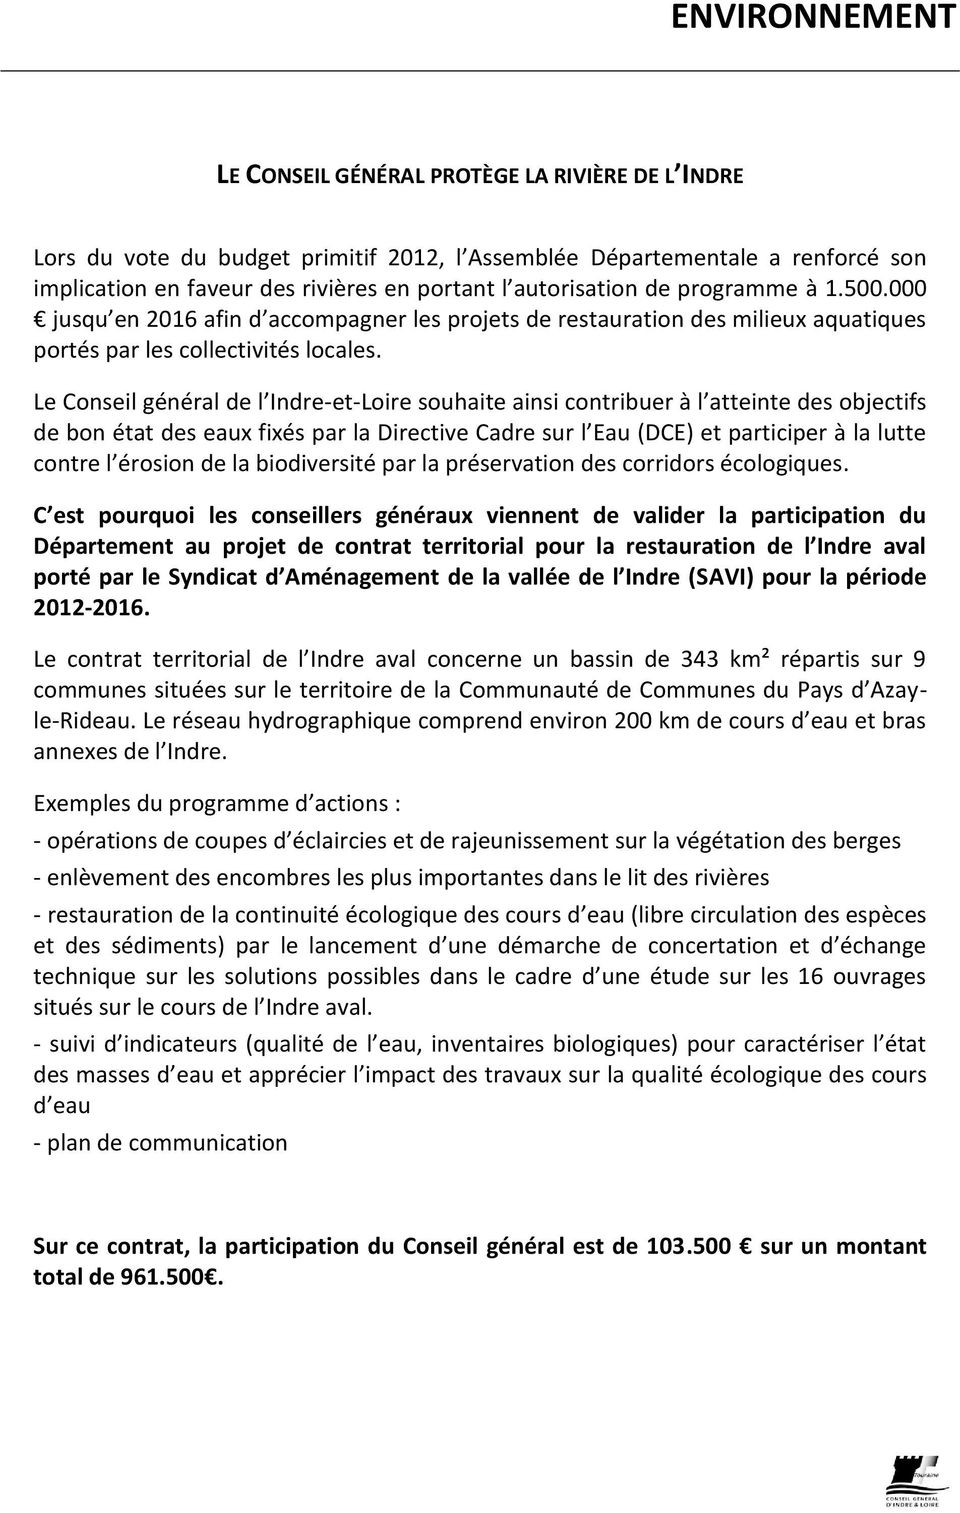 Le Conseil général de l Indre-et-Loire souhaite ainsi contribuer à l atteinte des objectifs de bon état des eaux fixés par la Directive Cadre sur l Eau (DCE) et participer à la lutte contre l érosion